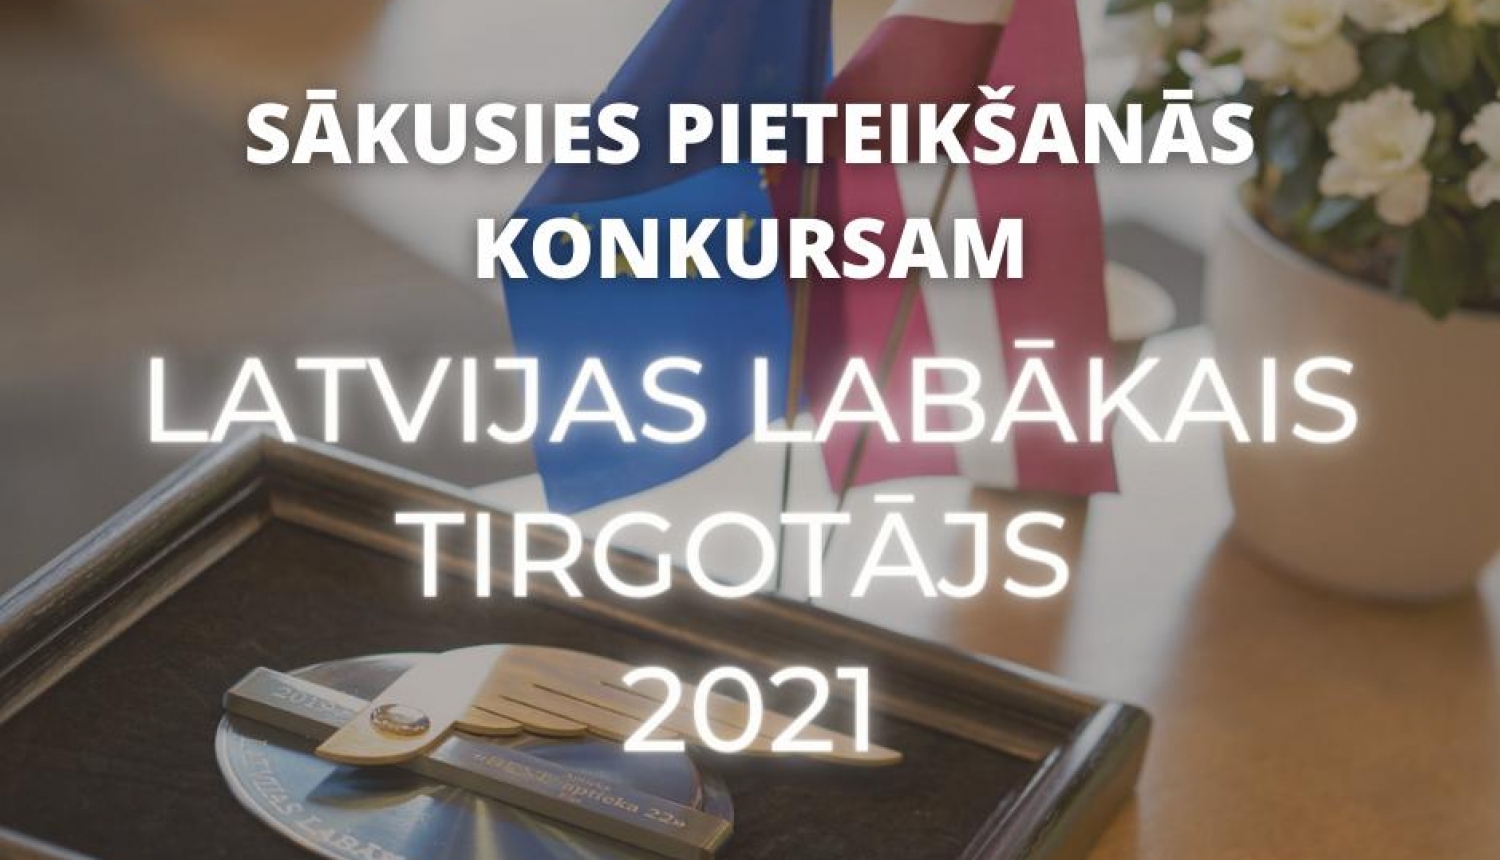 Sākusies pieteikšanās konkursam "Latvijas labākais tirgotājs 2021"